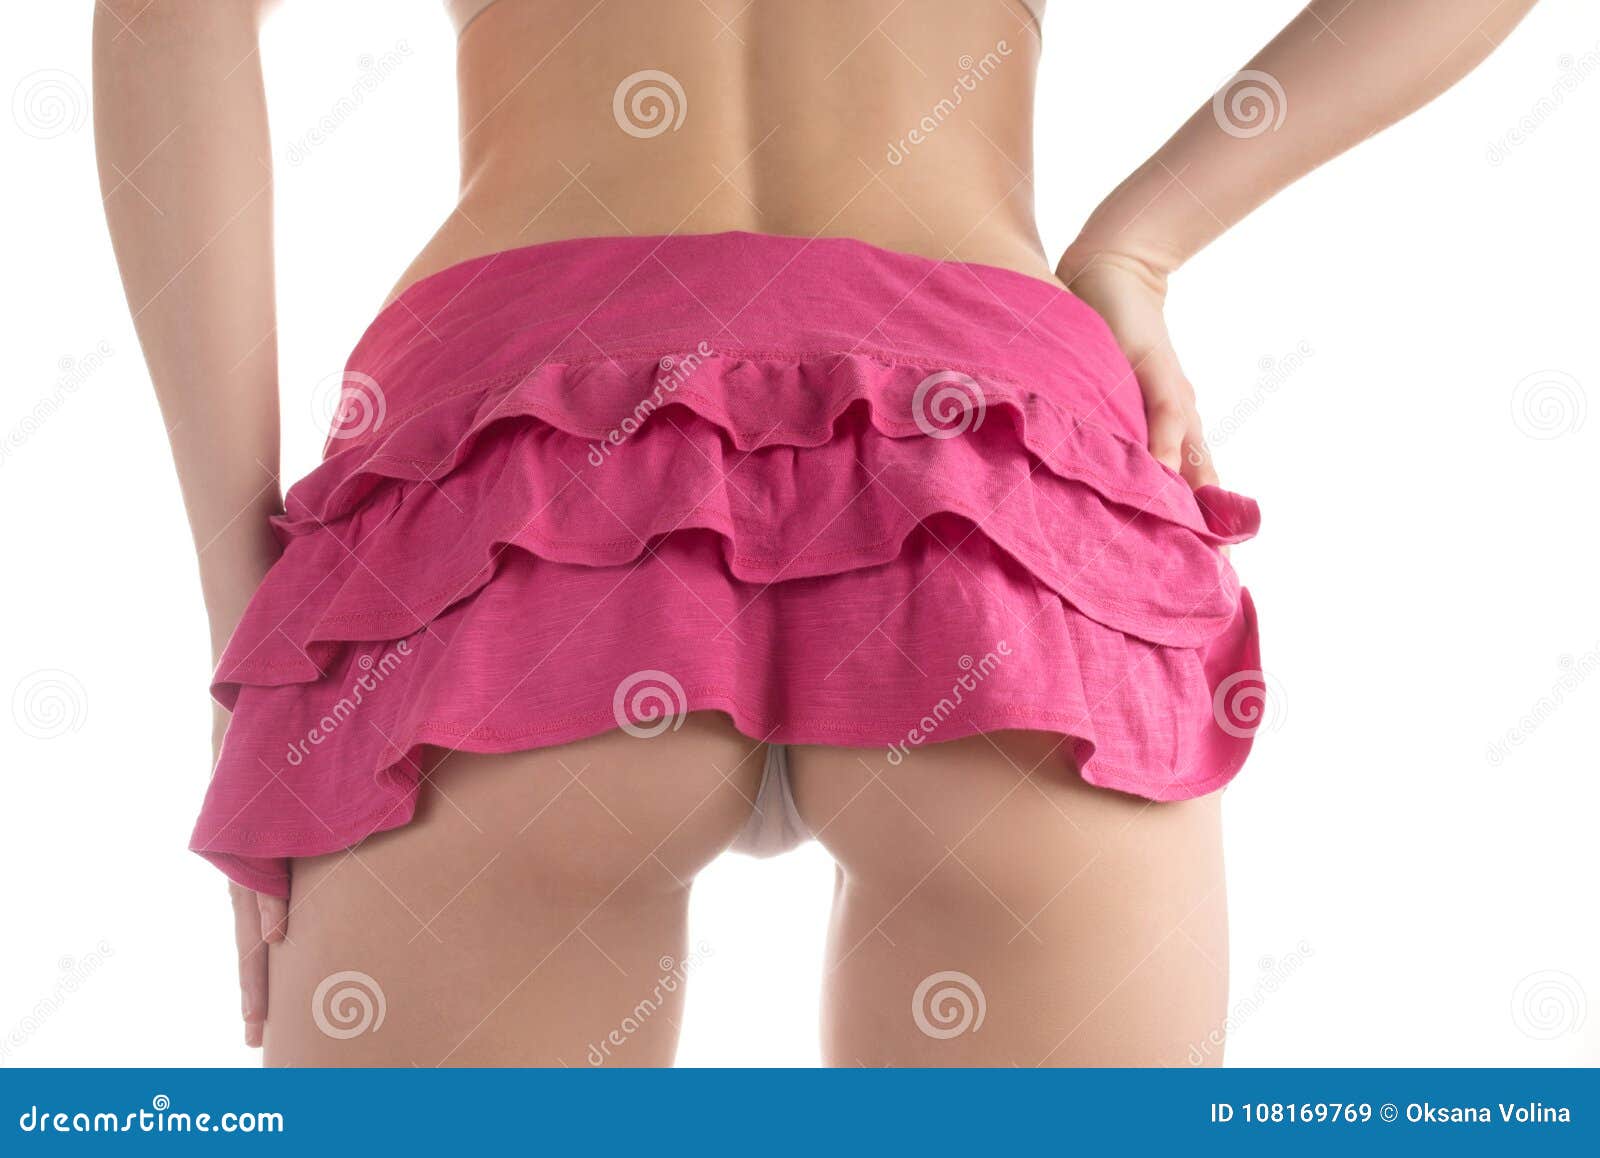 bilal israel khan share short skirt showing ass photos